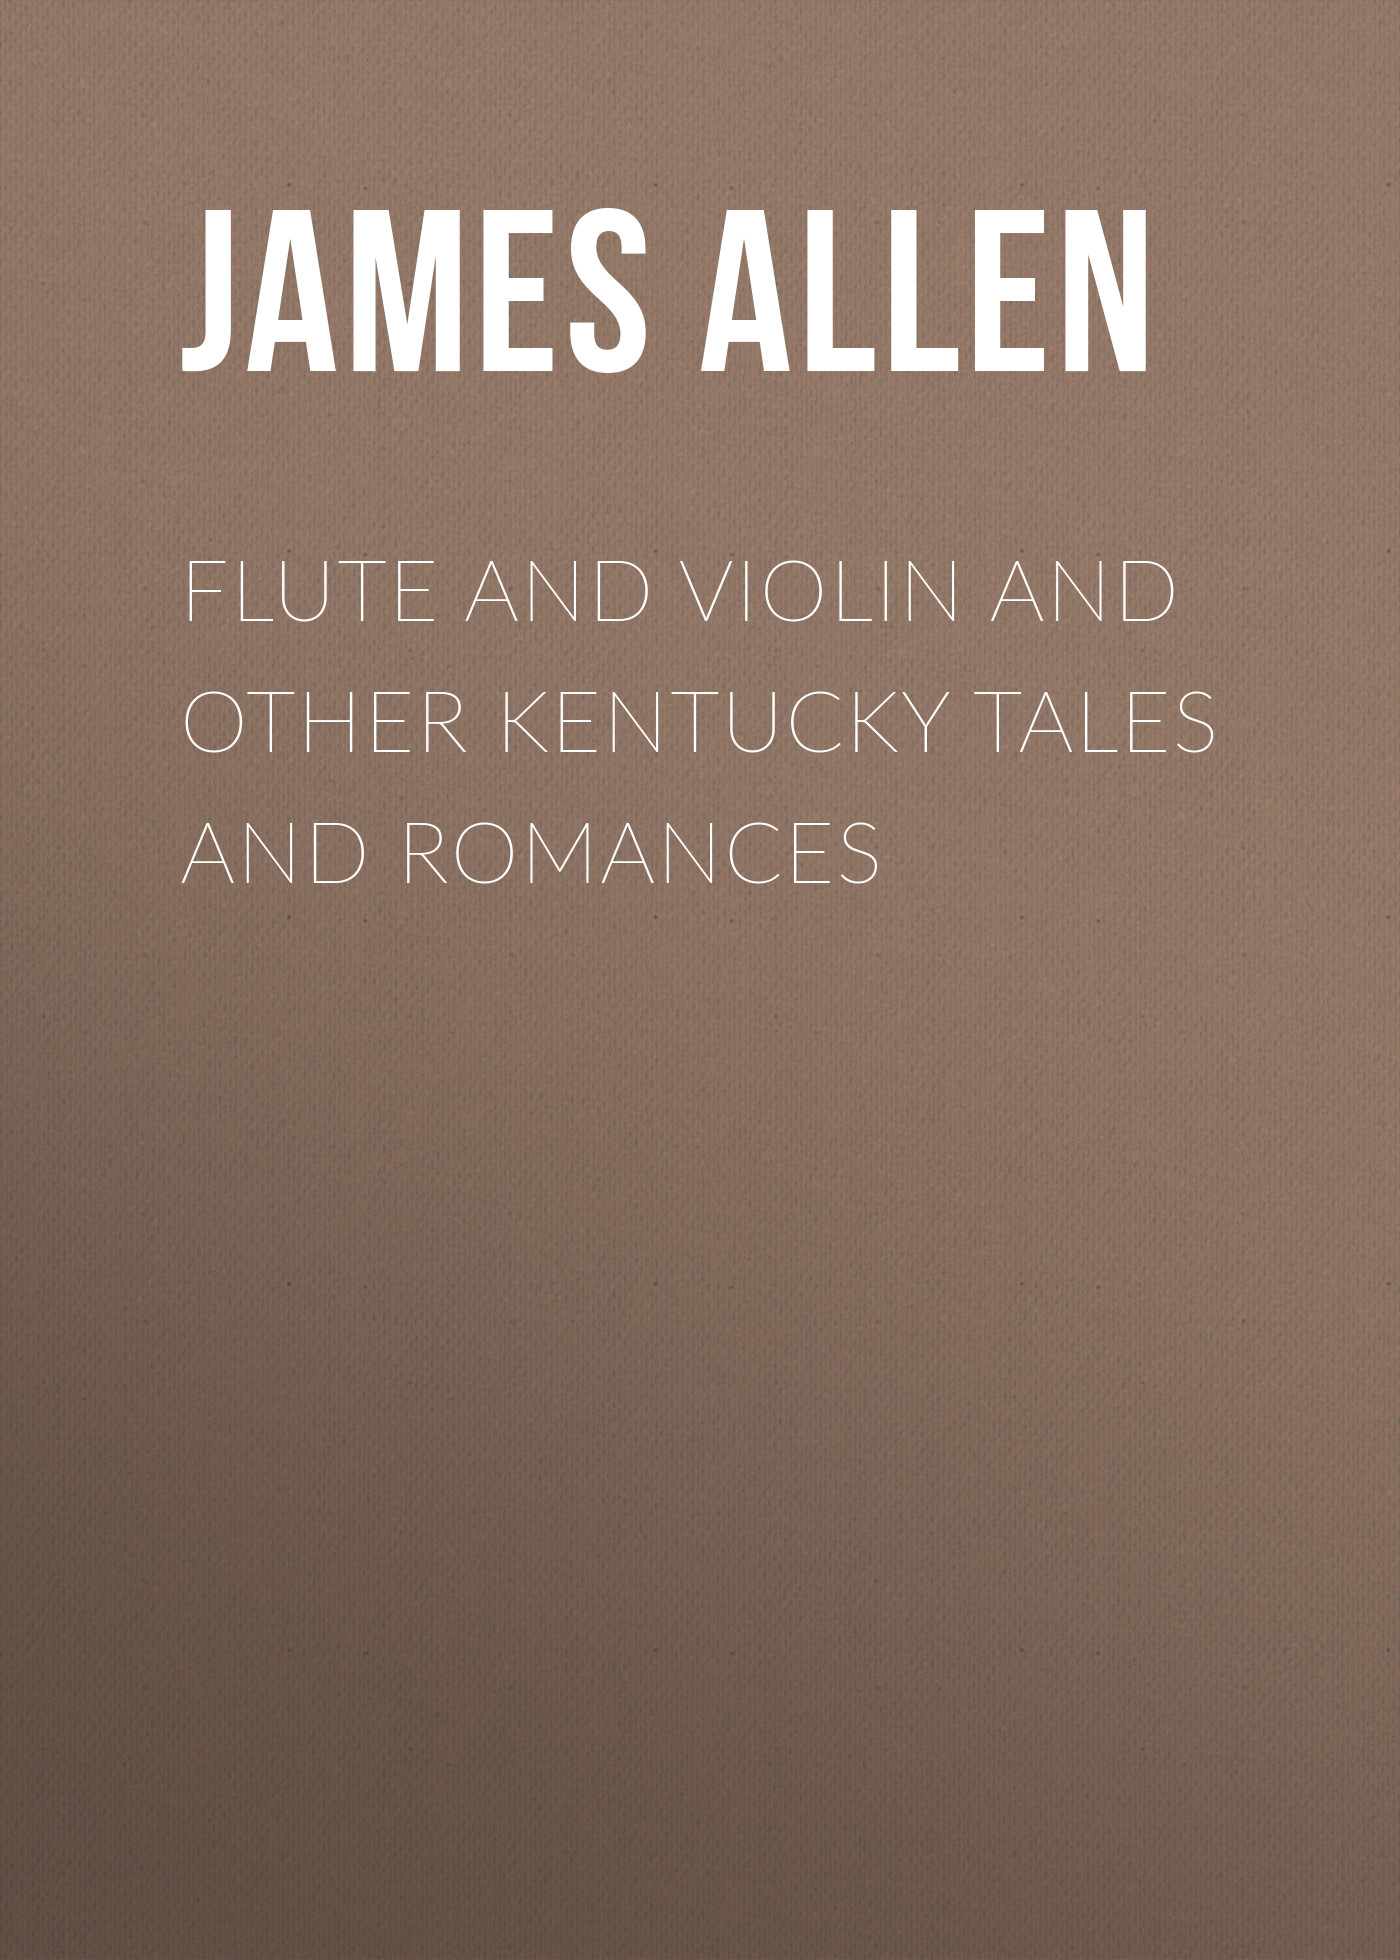 Книга Flute and Violin and other Kentucky Tales and Romances из серии , созданная James Allen, может относится к жанру Зарубежная классика. Стоимость электронной книги Flute and Violin and other Kentucky Tales and Romances с идентификатором 23165859 составляет 5.99 руб.